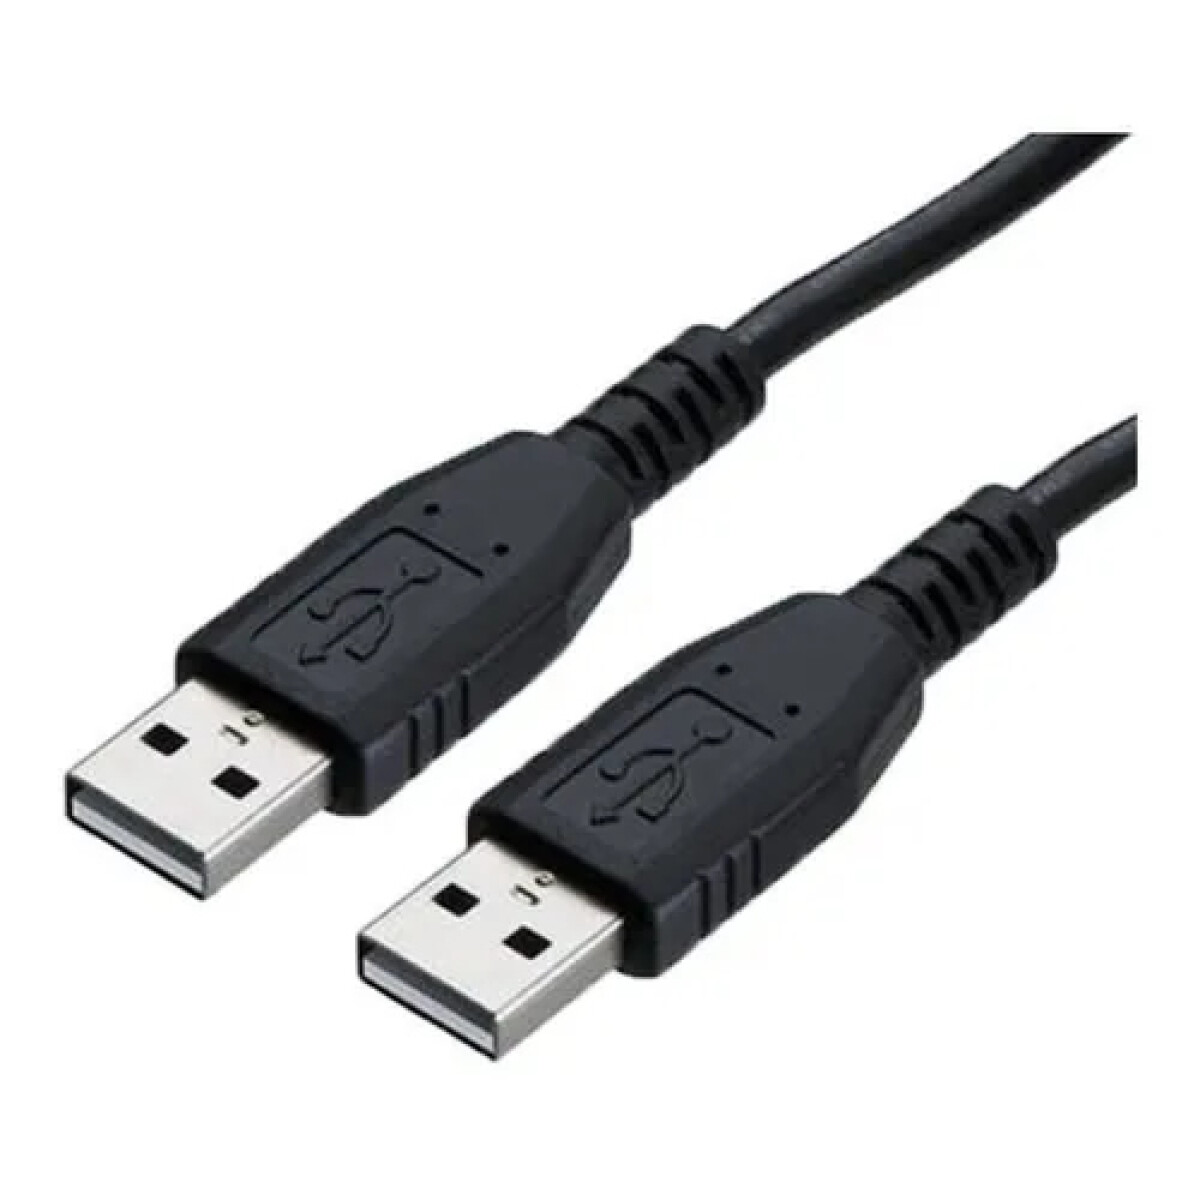 Cable USB 2.0 macho - macho de 1,5 metros de largo 